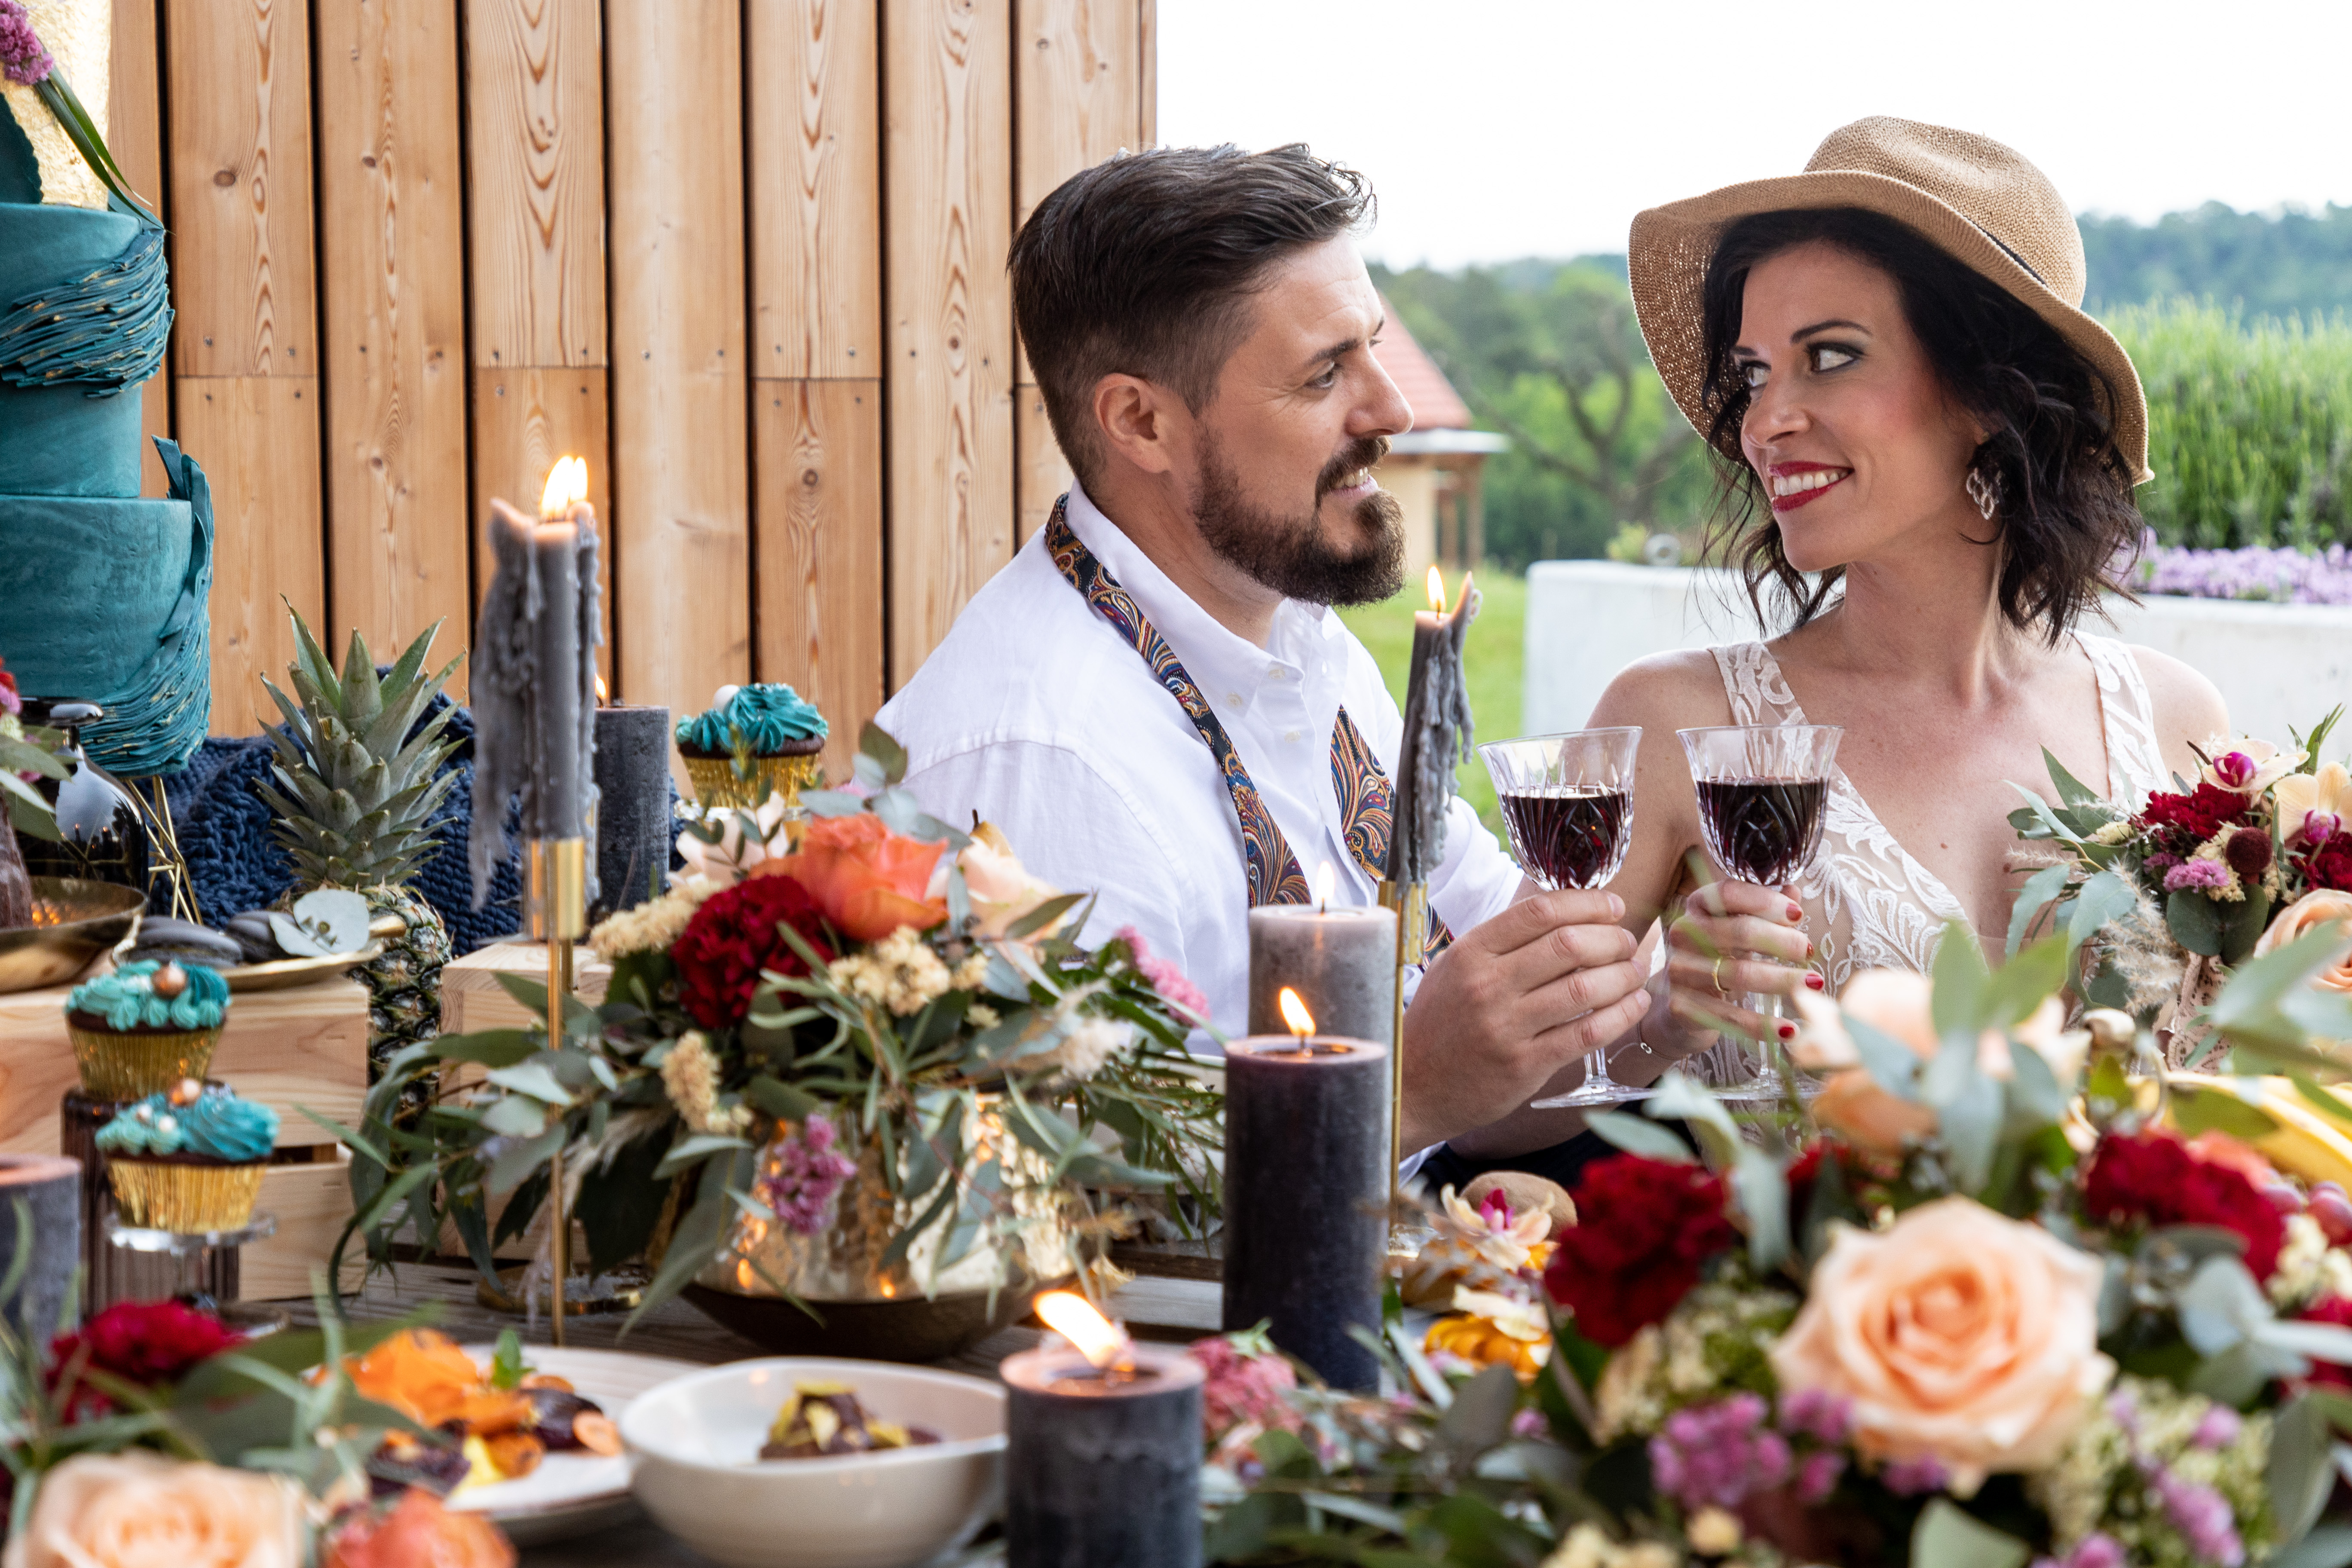 Sie sehen ein Brautpaar am Tisch im EventArium. JUFA Hotels bietet Ihnen den idealen Ort für märchenhafte Hochzeiten.